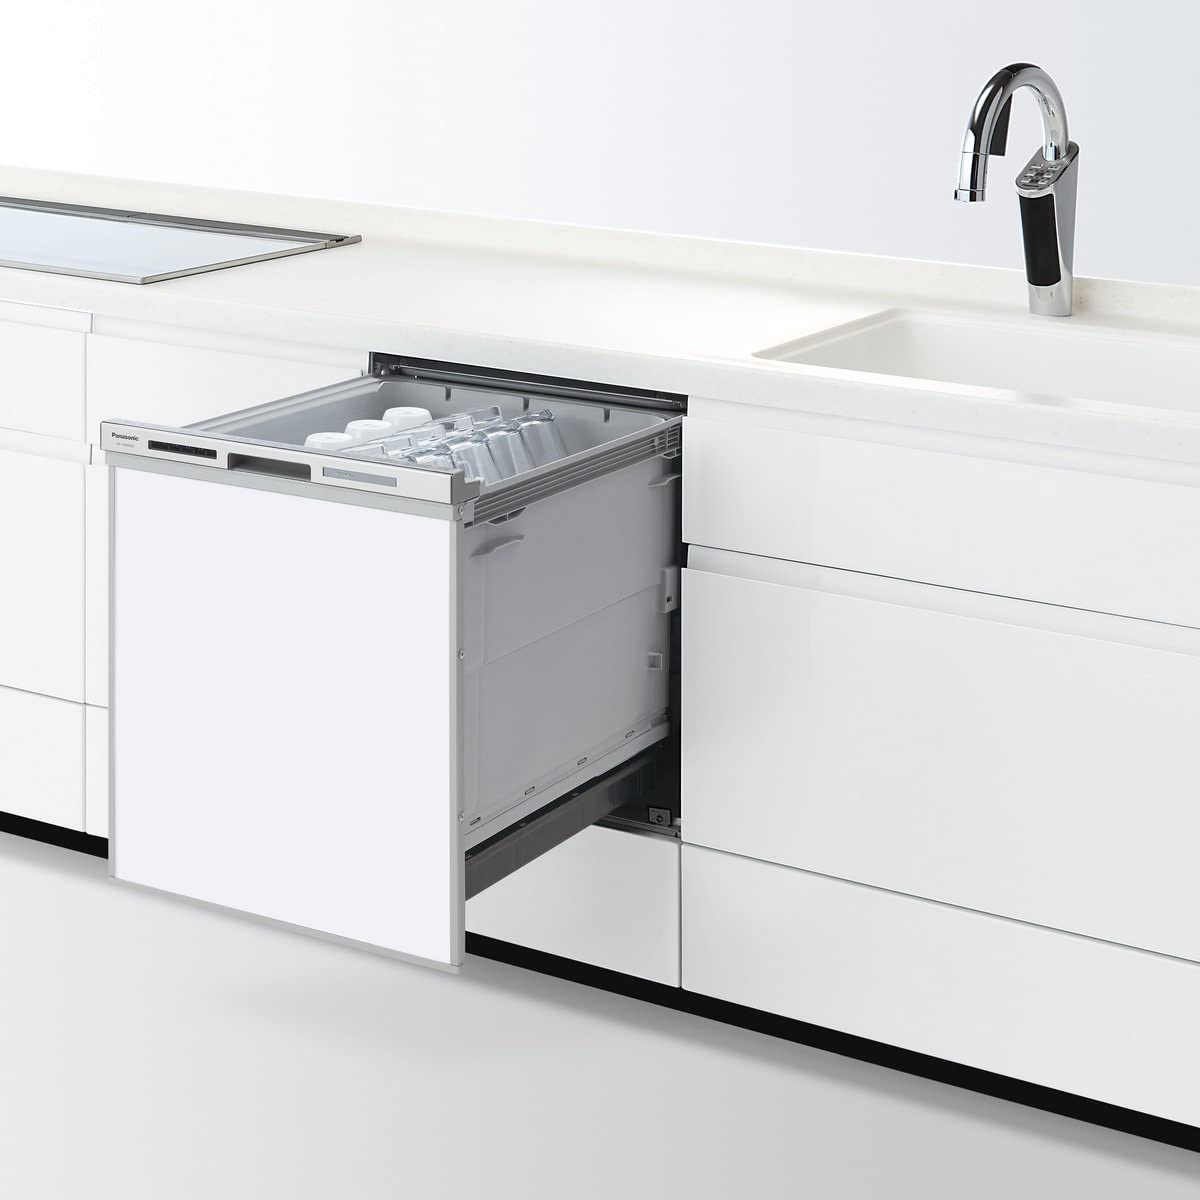 Panasonic(パナソニック) ビルトイン食器洗い乾燥機 NP-45MD8Sホワイト